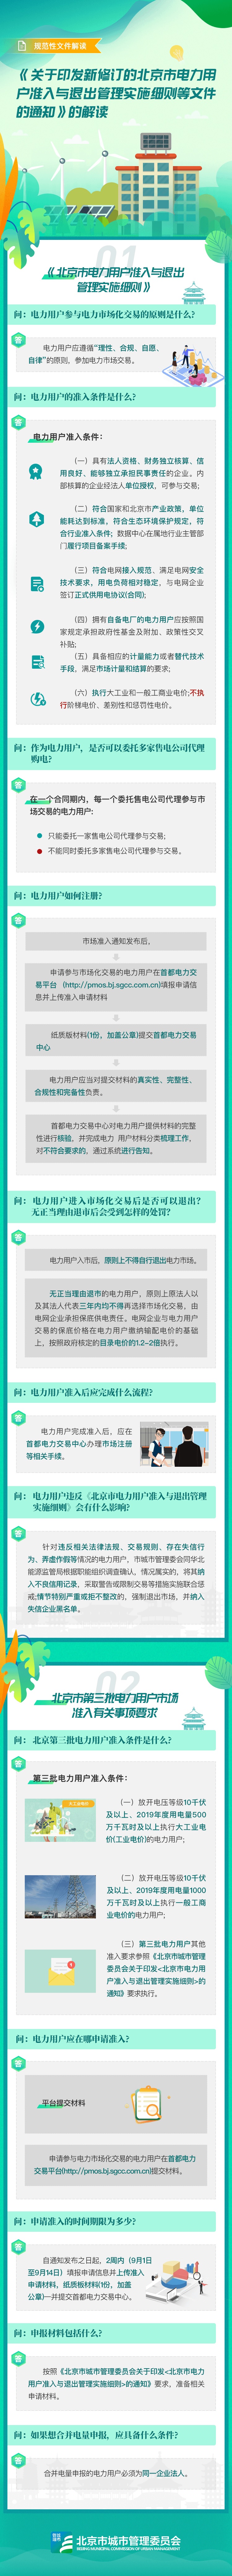 图解《关于印发新修订的北京市电力用户准入与退出管理实施细则等文件的通知》.jpg